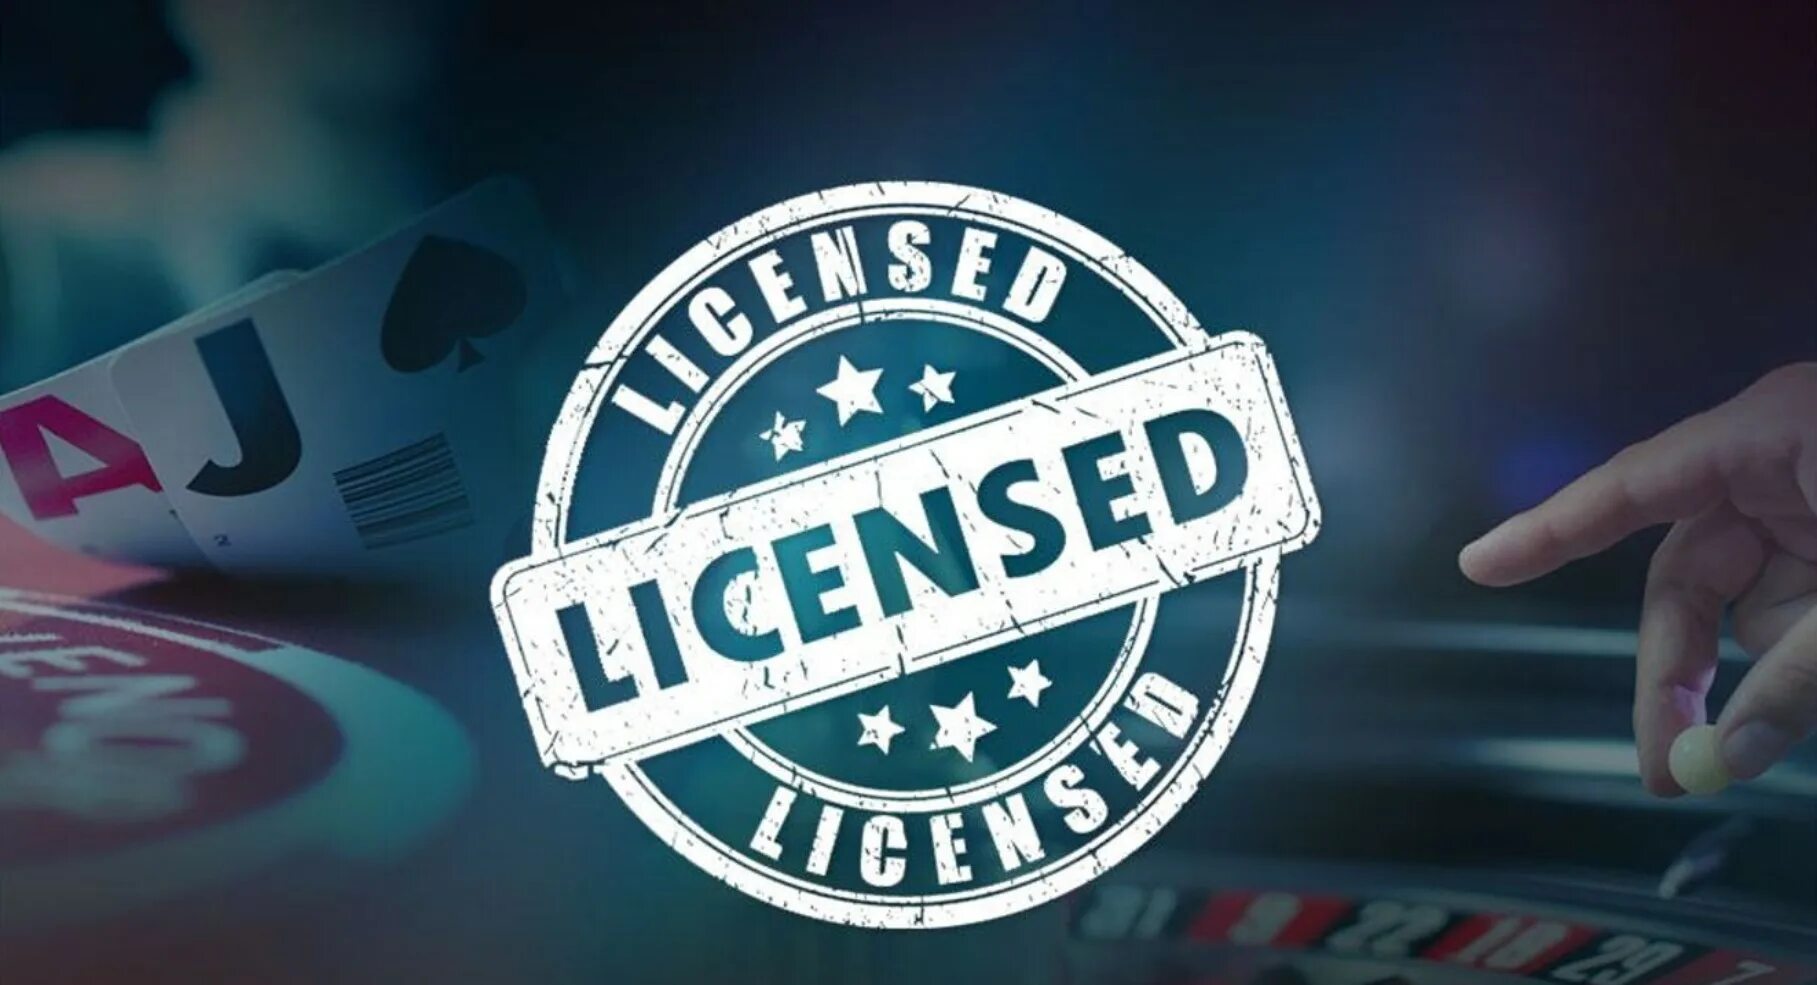 Licensing gaming. Казино с лицензией. Лицензированные интернет казино. Игорная лицензия.